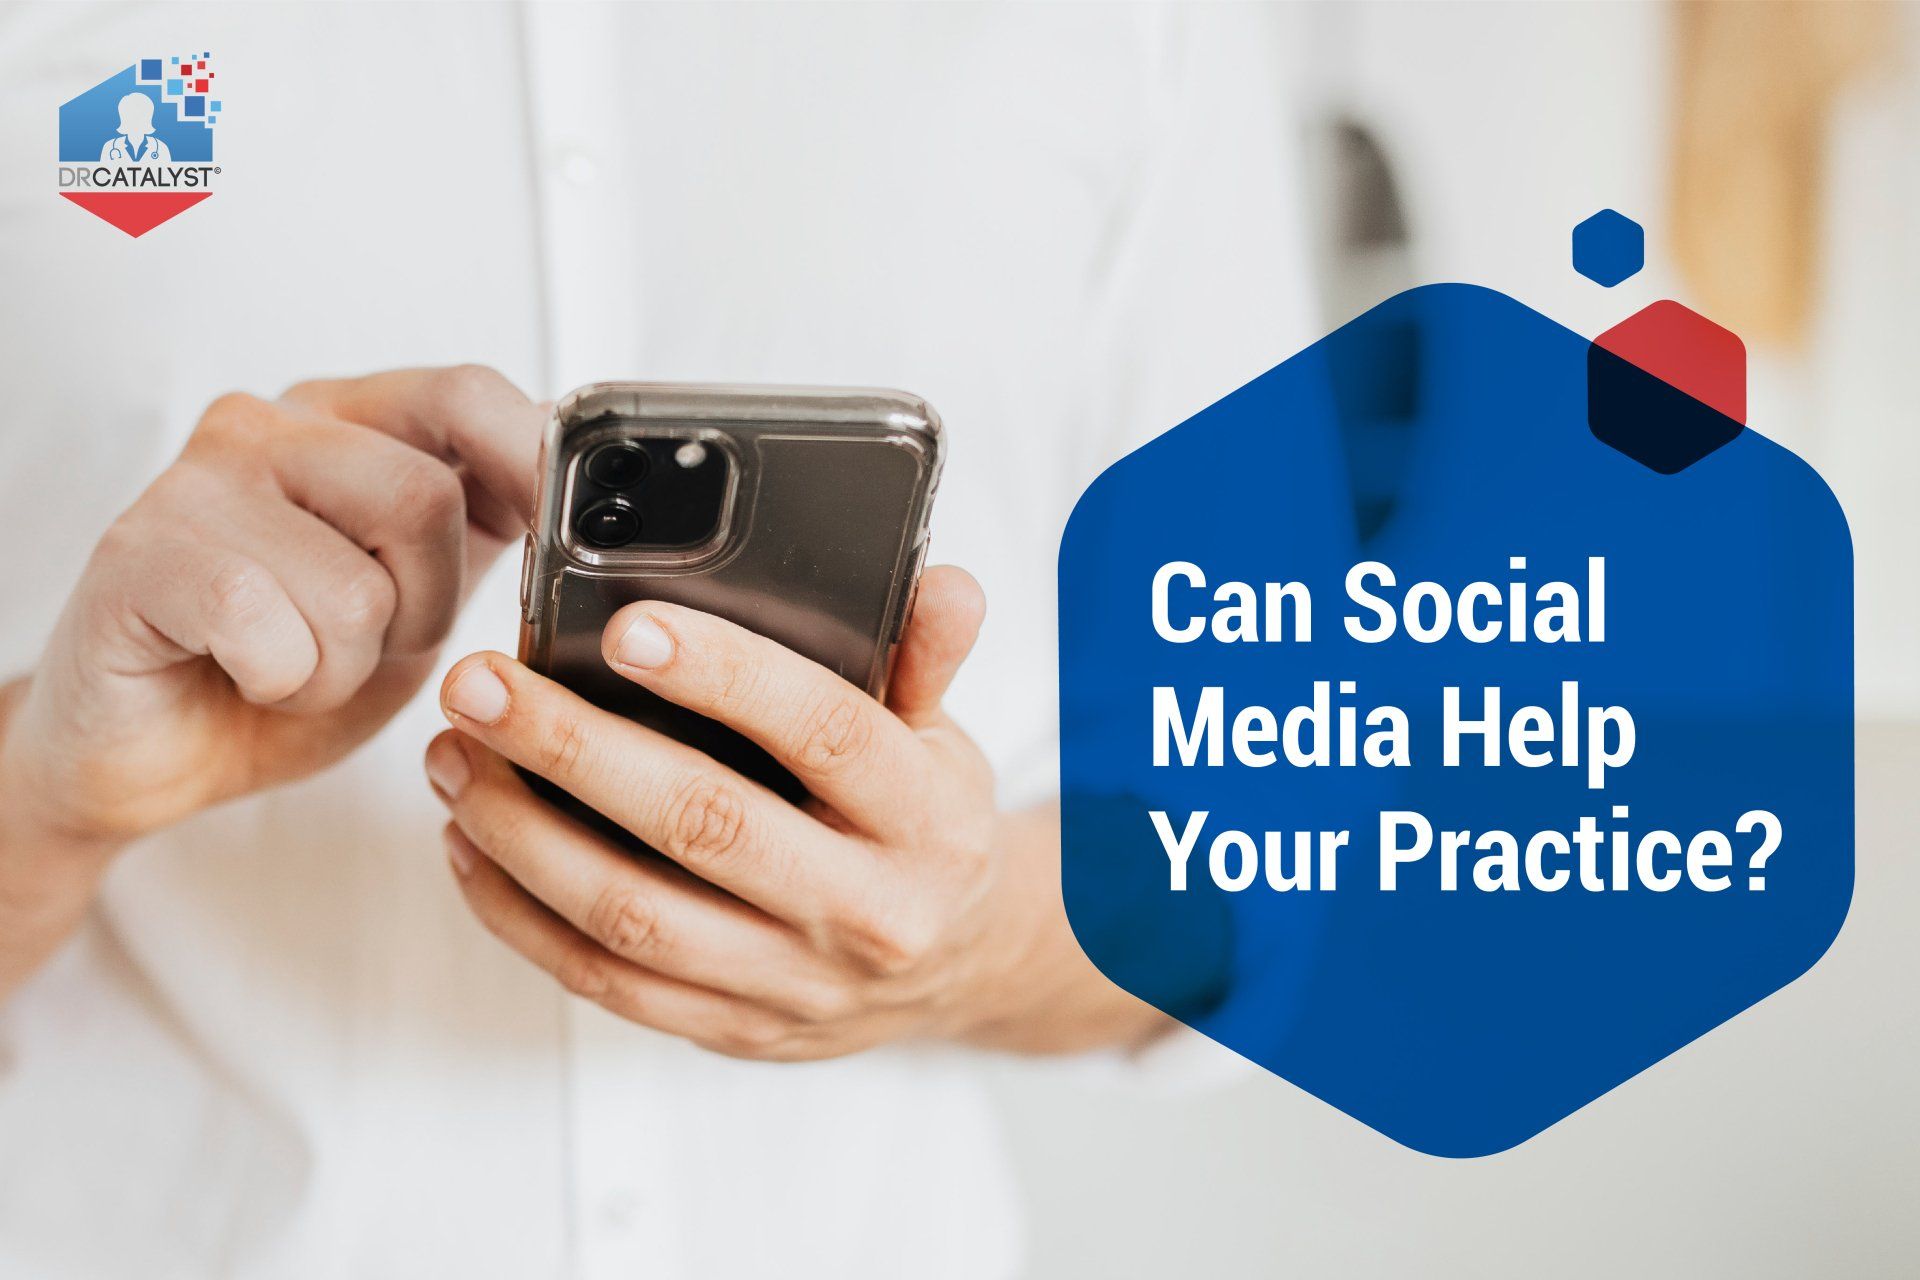 Social Media in Healthcare